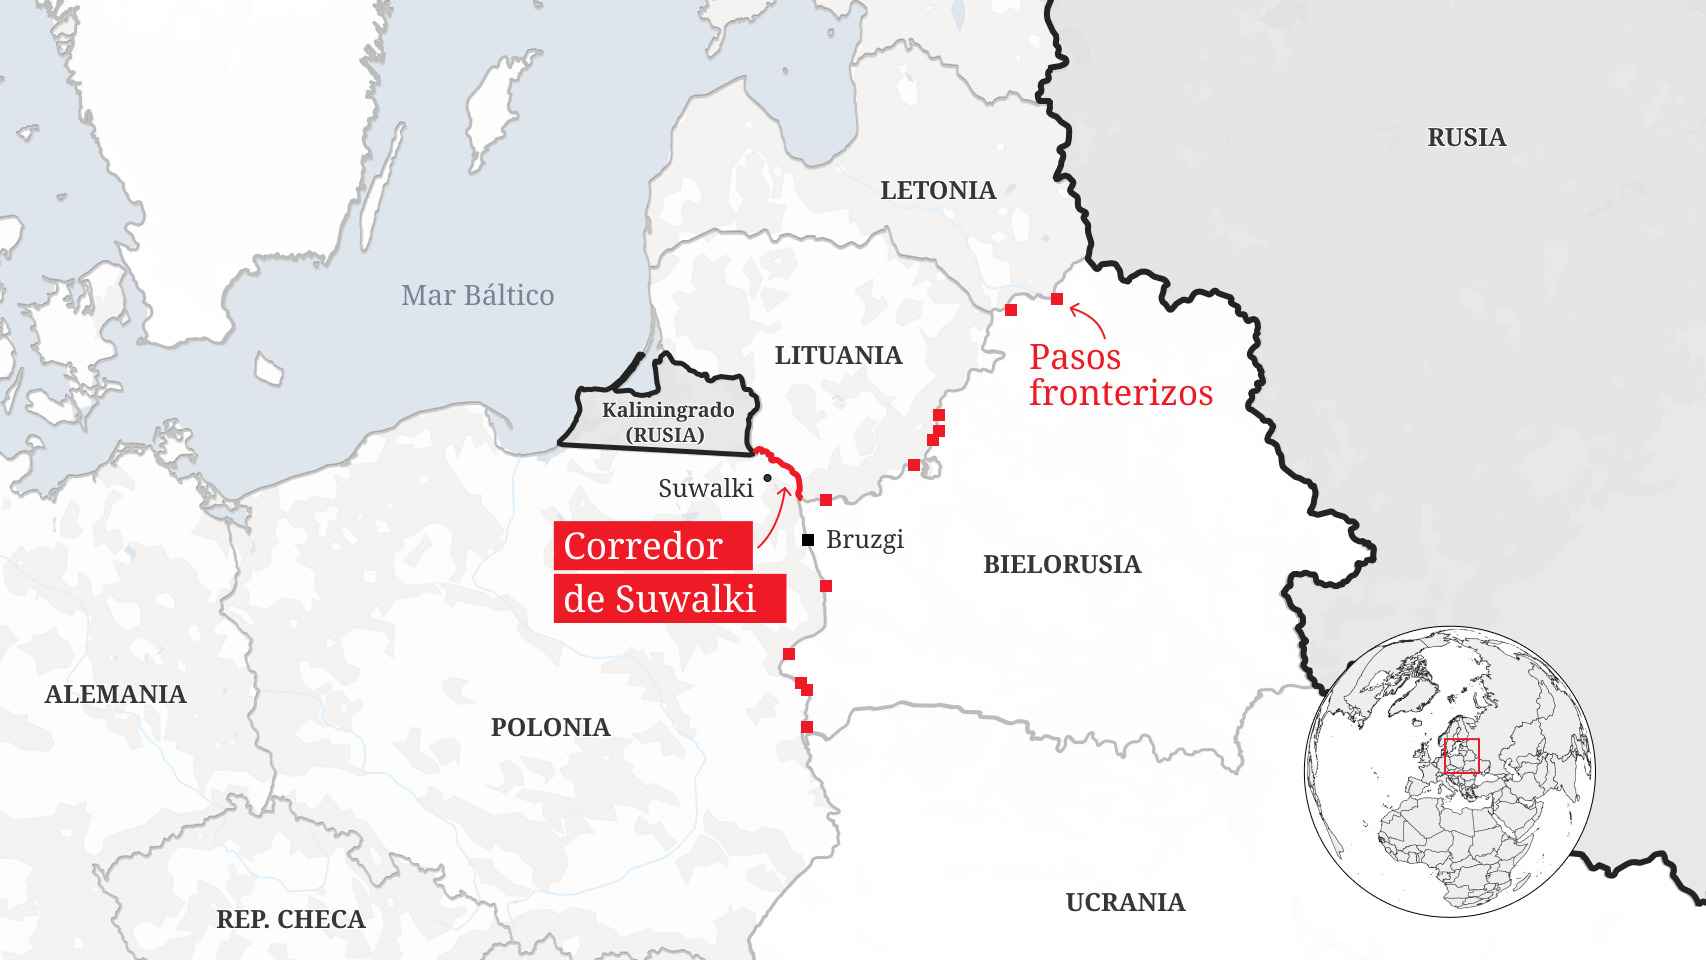 La situación del Corredor de Suwalki, entre Polonia, Lituania, Bielorrusia y Kaliningrado (Rusia).